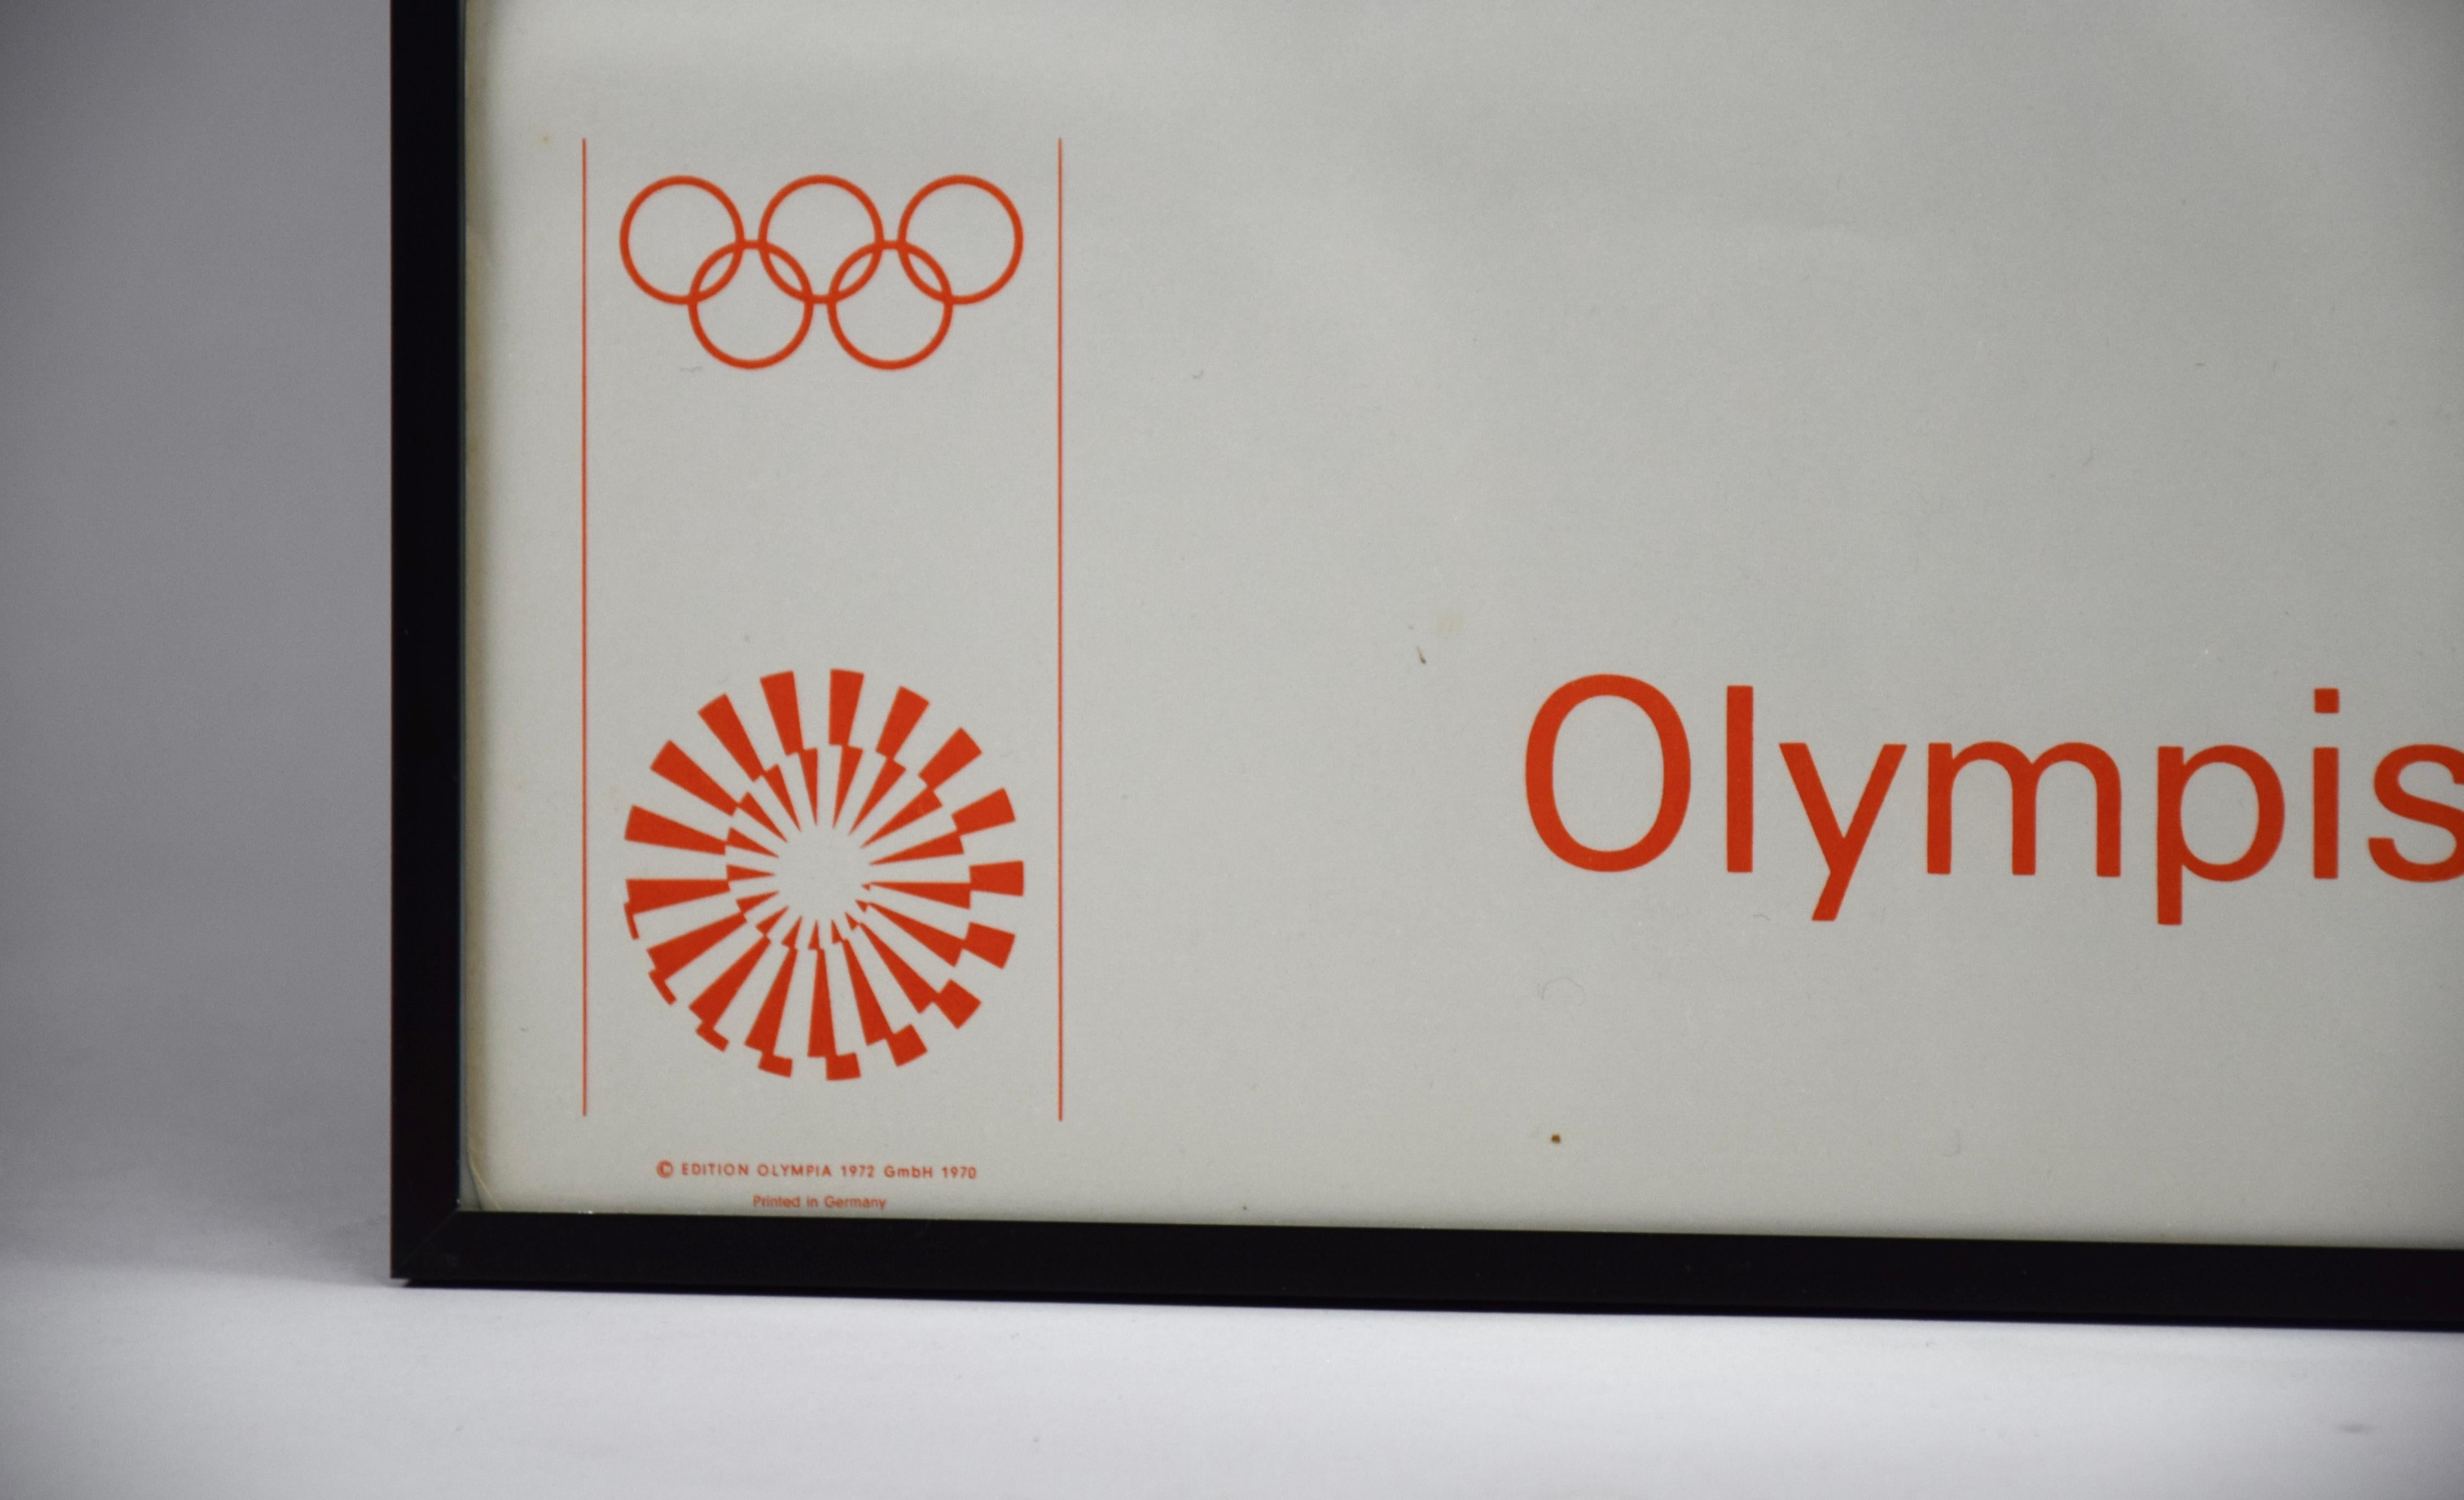 Plongez dans l'esprit du sport et de l'art avec l'affiche emblématique des Jeux olympiques de Munich en 1972, créée par le célèbre artiste Pierre Soulages. Cette affiche ne commémore pas seulement les Jeux olympiques historiques, mais met également